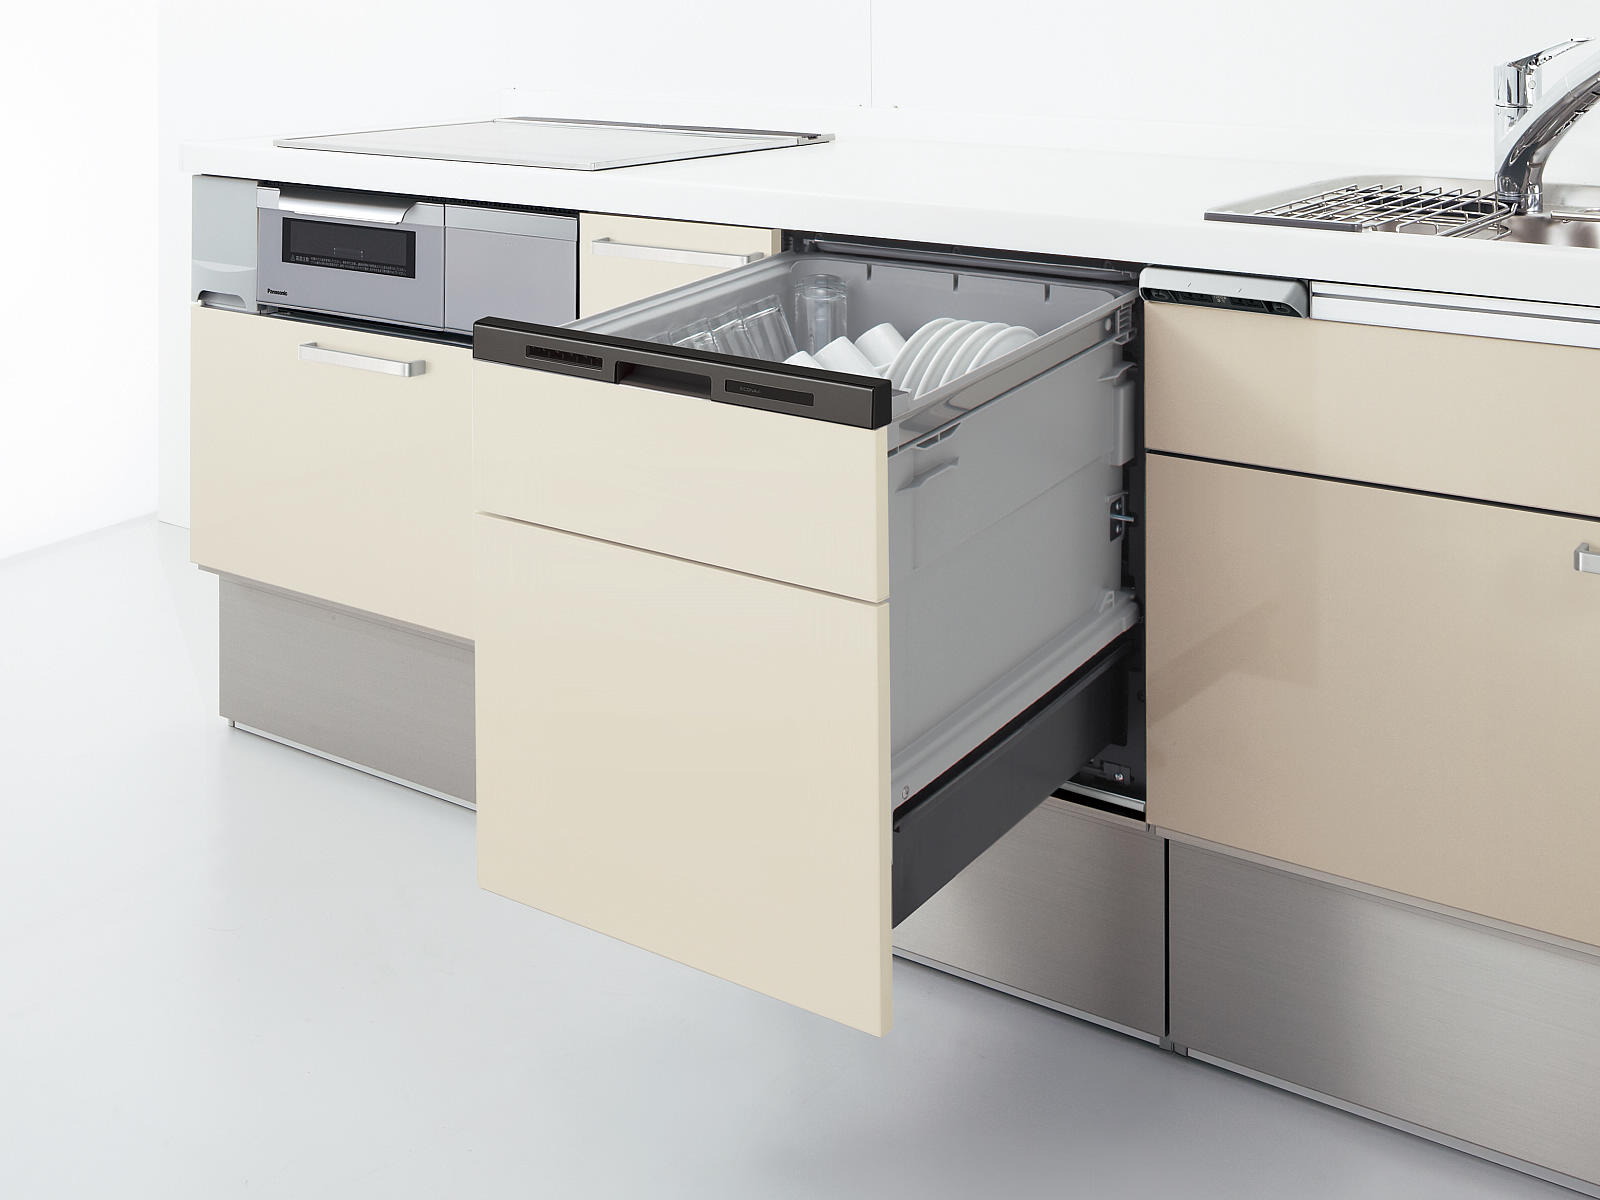 ビルトイン式電気食器洗機（ビルトイン食器洗い乾燥機）「E45MD9W2」